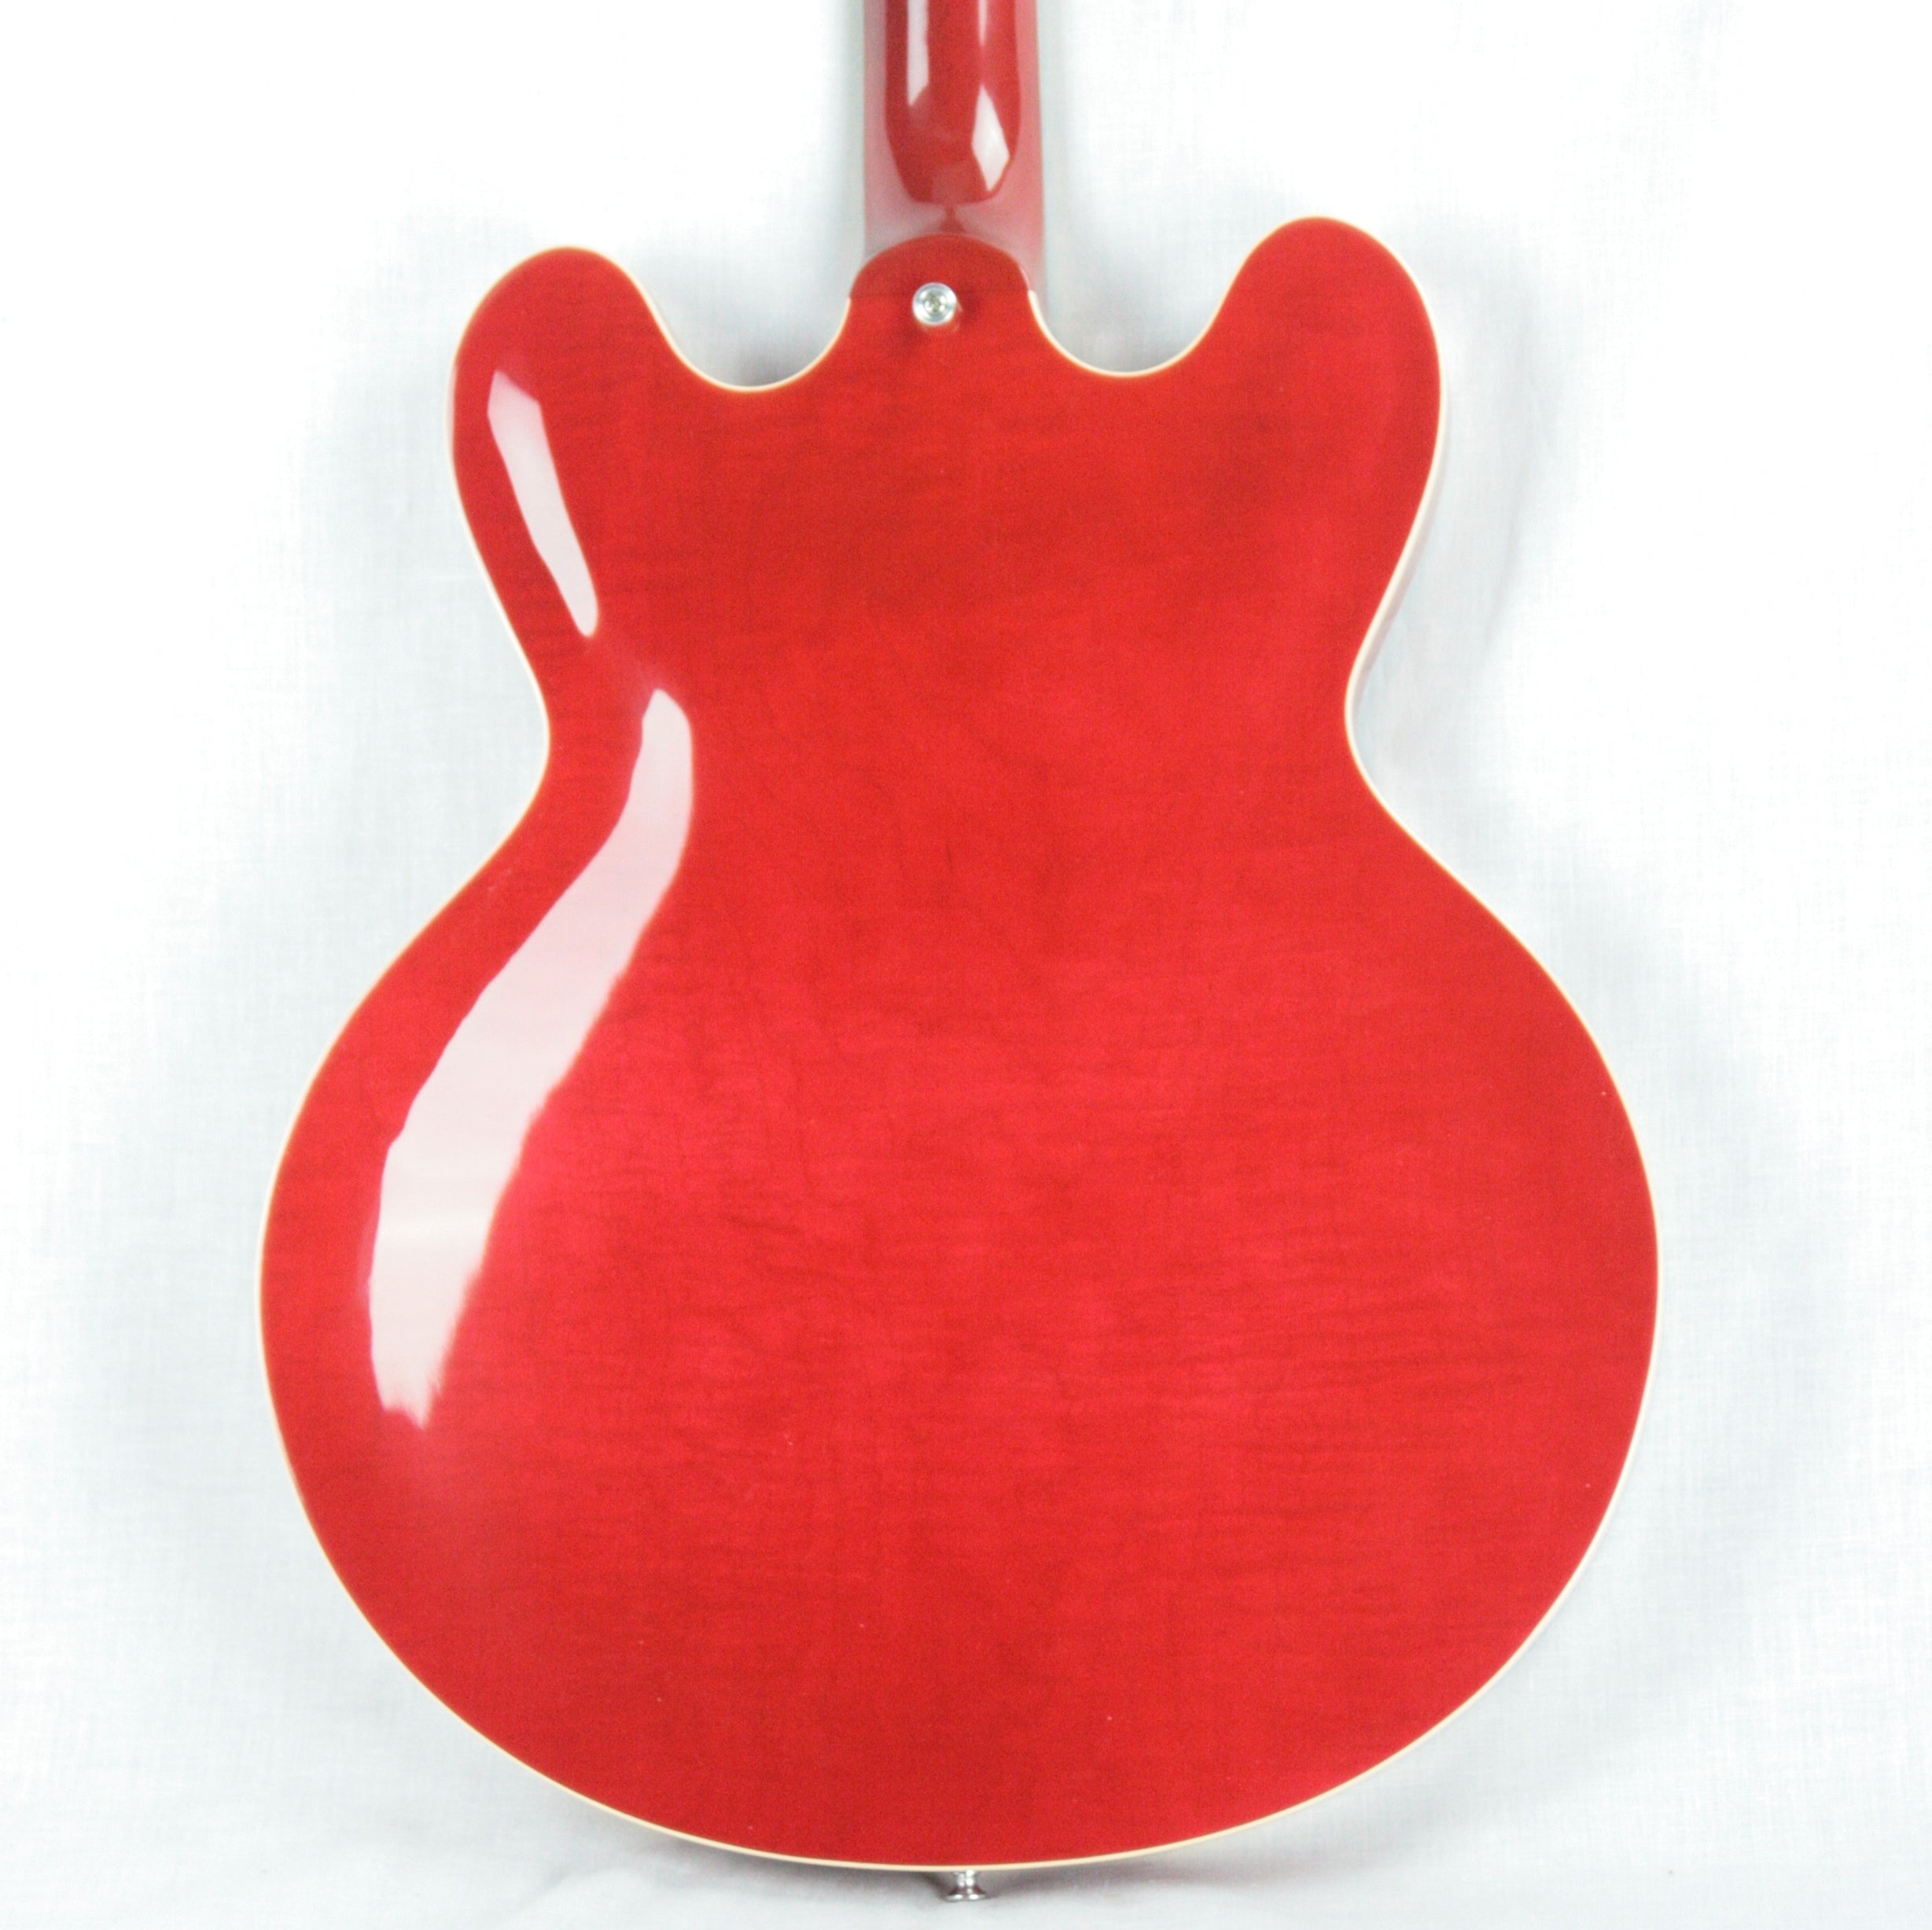 *SOLD*  2017 Gibson ES-335 FIGURED Cherry Red Flametop! Block inlays! Memphis 345 355